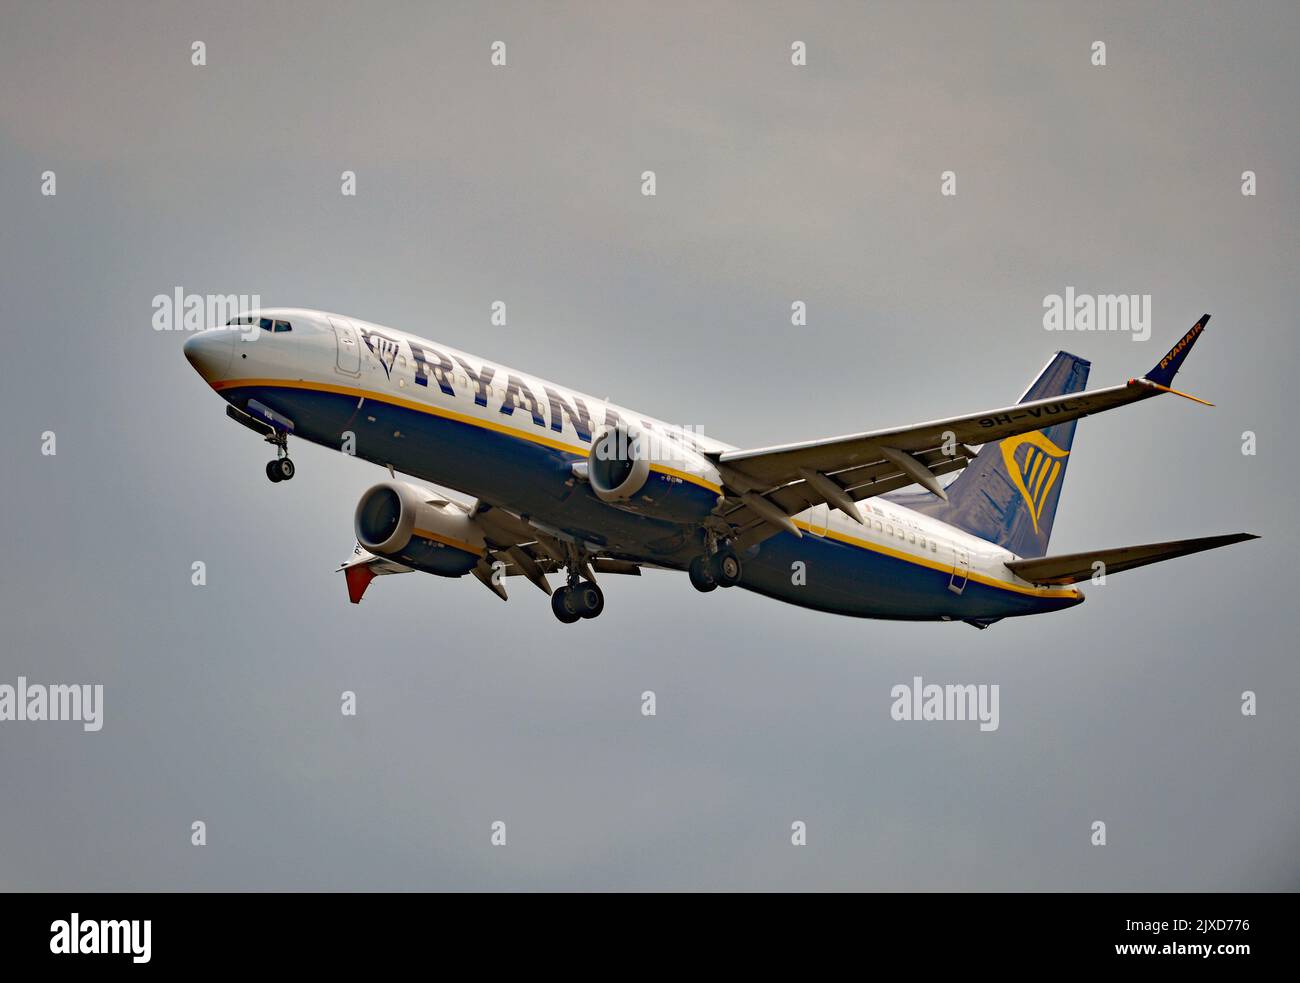 Un avion de ligne Ryanair Boeing 737 MAX 8-200 (9H-VUL) débarque à l'aéroport de Stansted, dans l'Essex. Date de la photo: Vendredi 2 septembre 2022. Banque D'Images